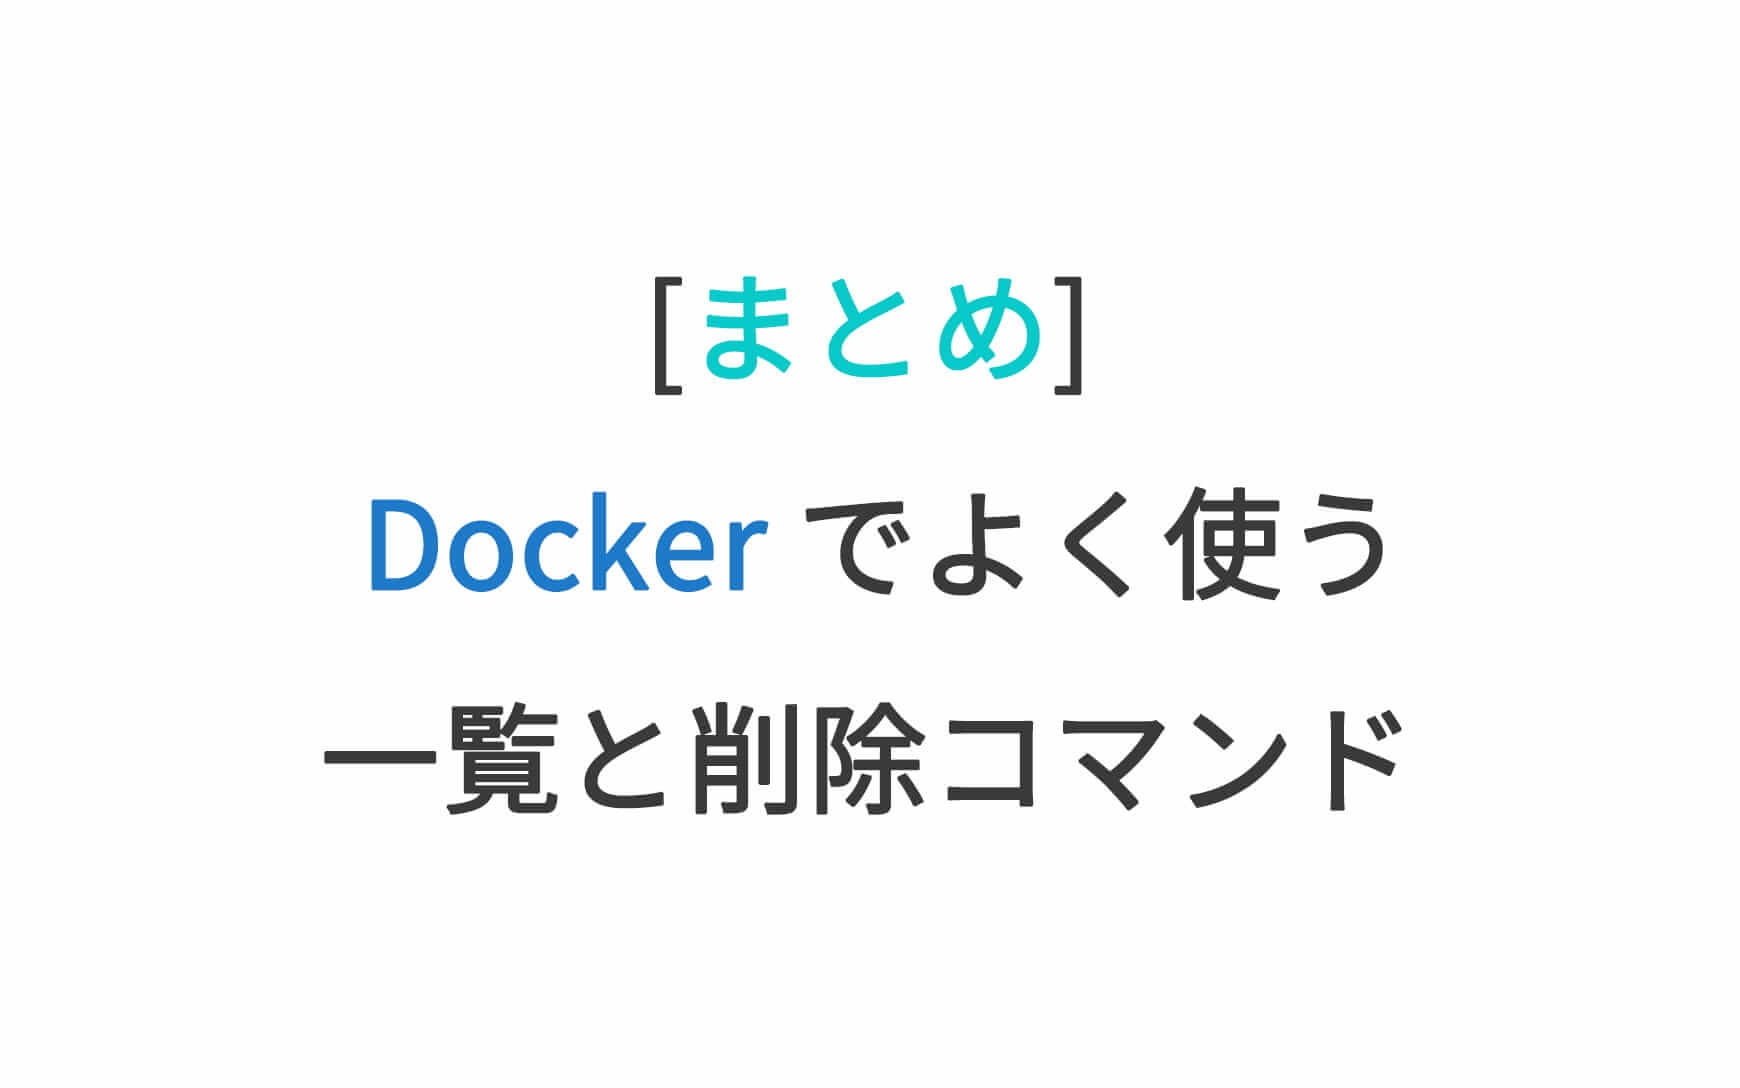 [まとめ] Docker でよく使う一覧と削除コマンド